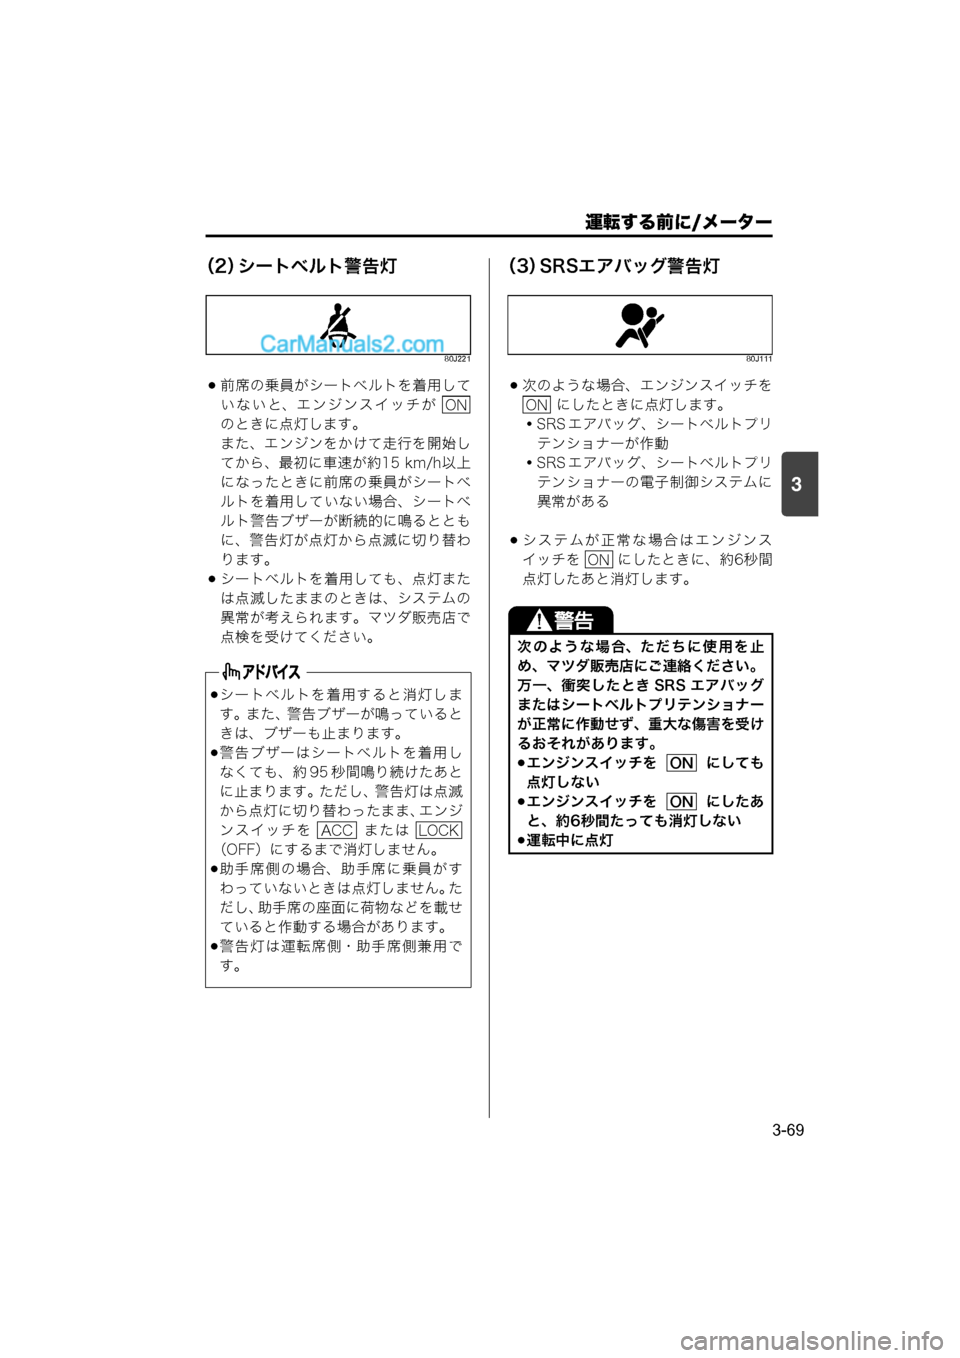 MAZDA MODEL CARROL 2015  取扱説明書 (キャロル) (in Japanese) 運転する前に/メーター
3-69
3
（2）シートベルト警告灯
80J221
前席の乗員がシートベルトを着用して
いないと、エンジンスイッチが 
のときに点灯�